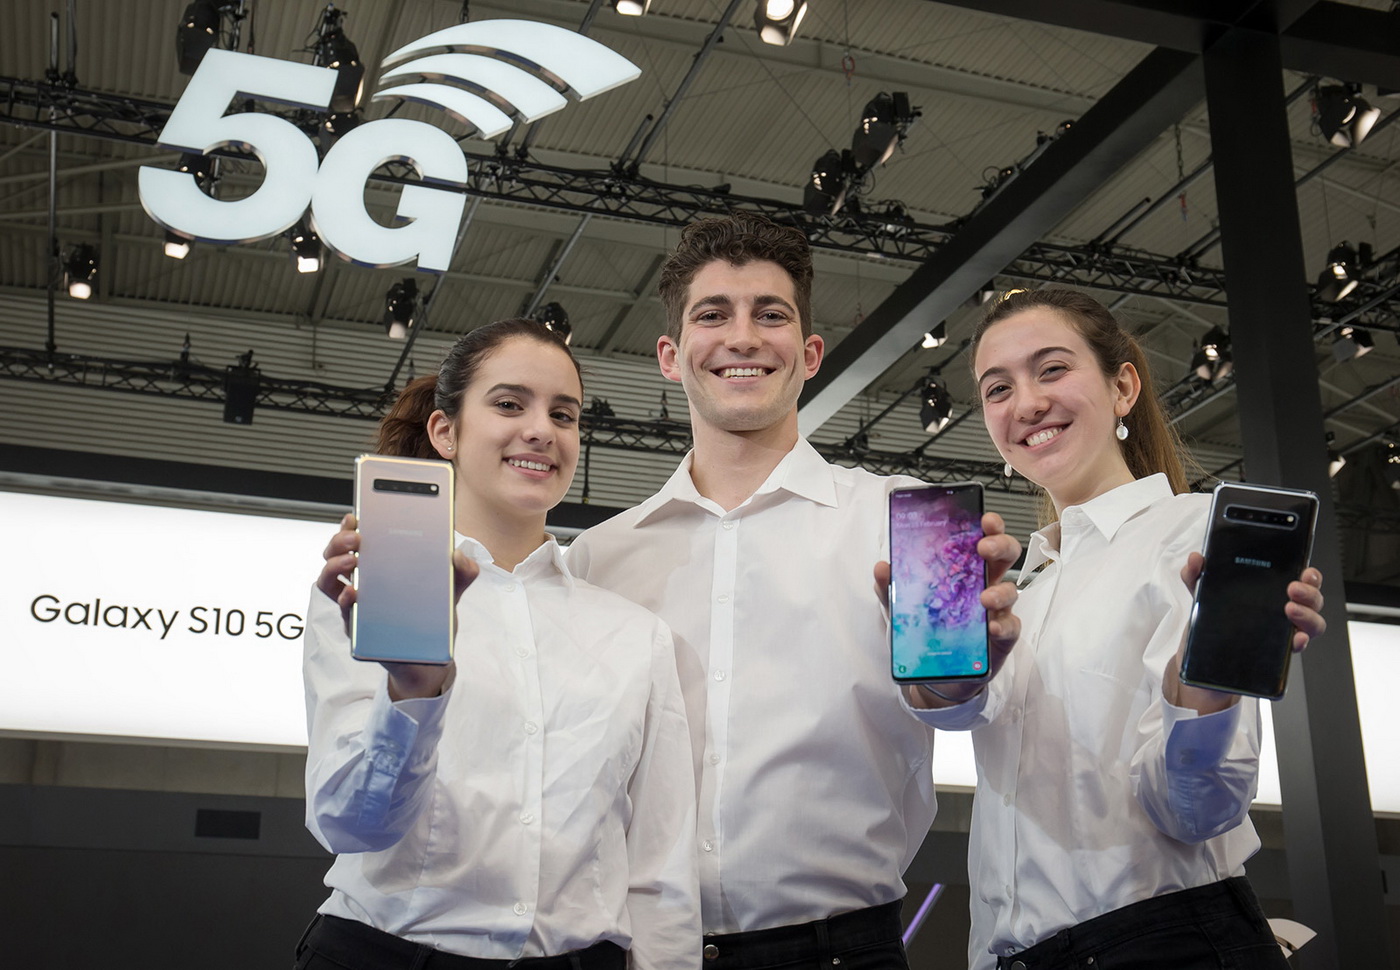 5G від Samsung - перспективний напрямок для телеком-гіганта